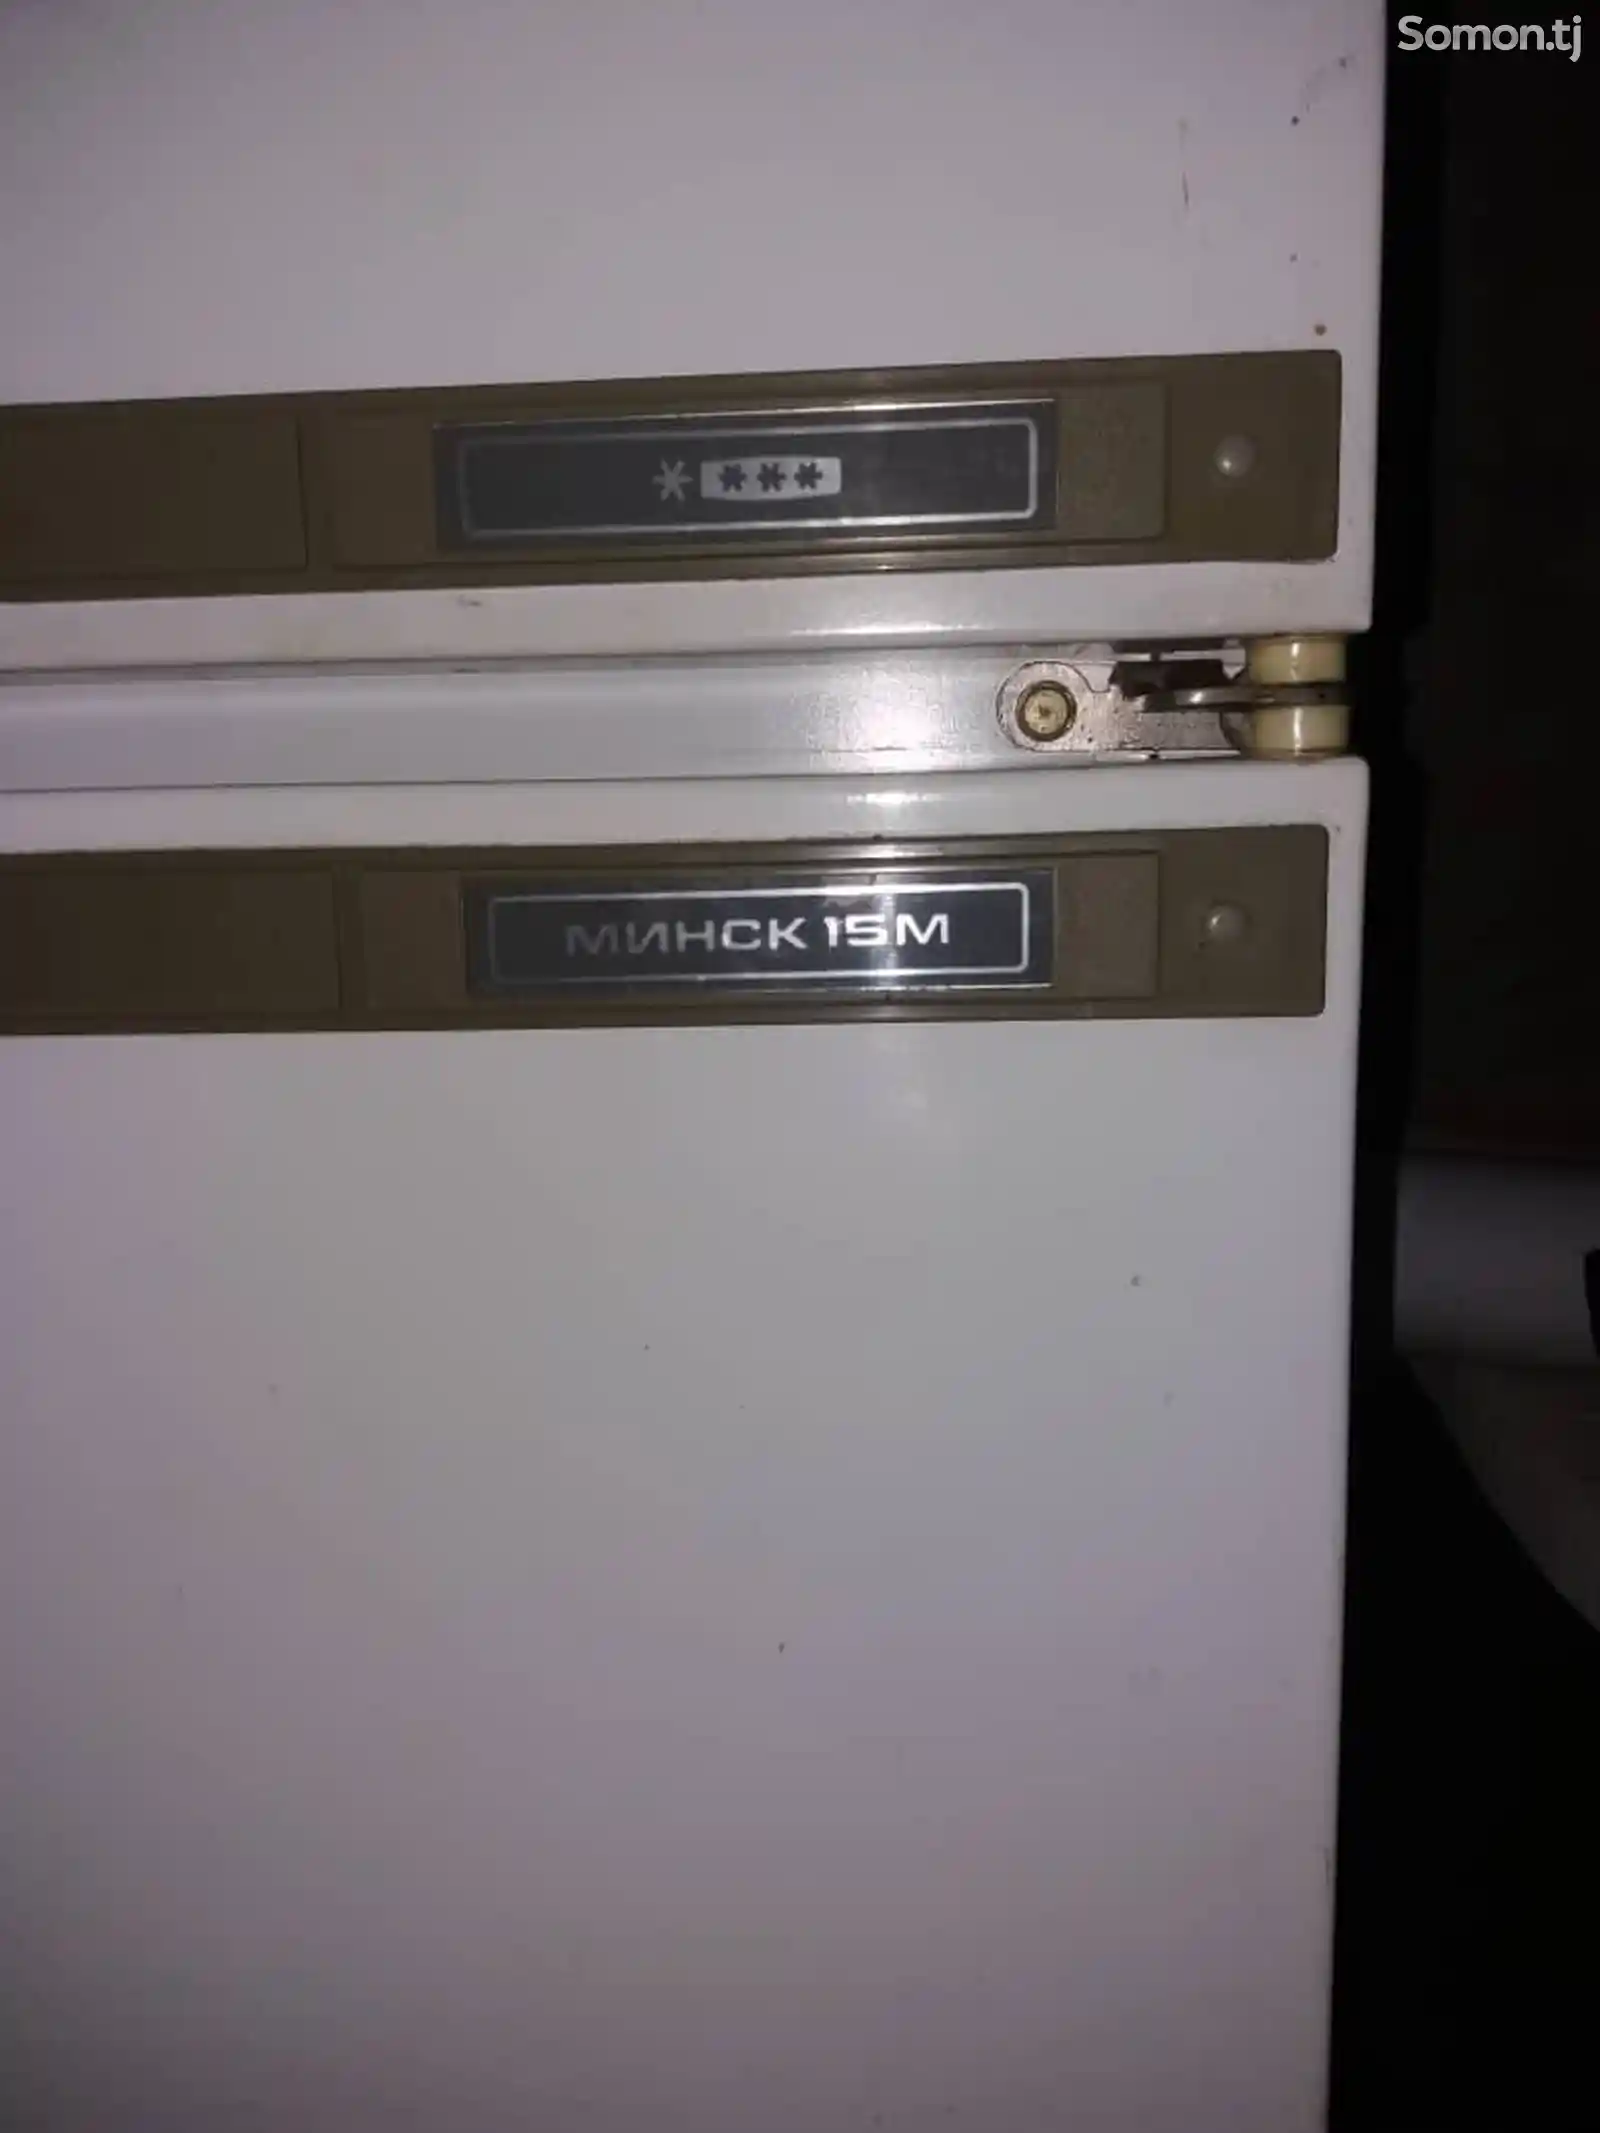 Двухкамерный холодильник Минск 15м-1